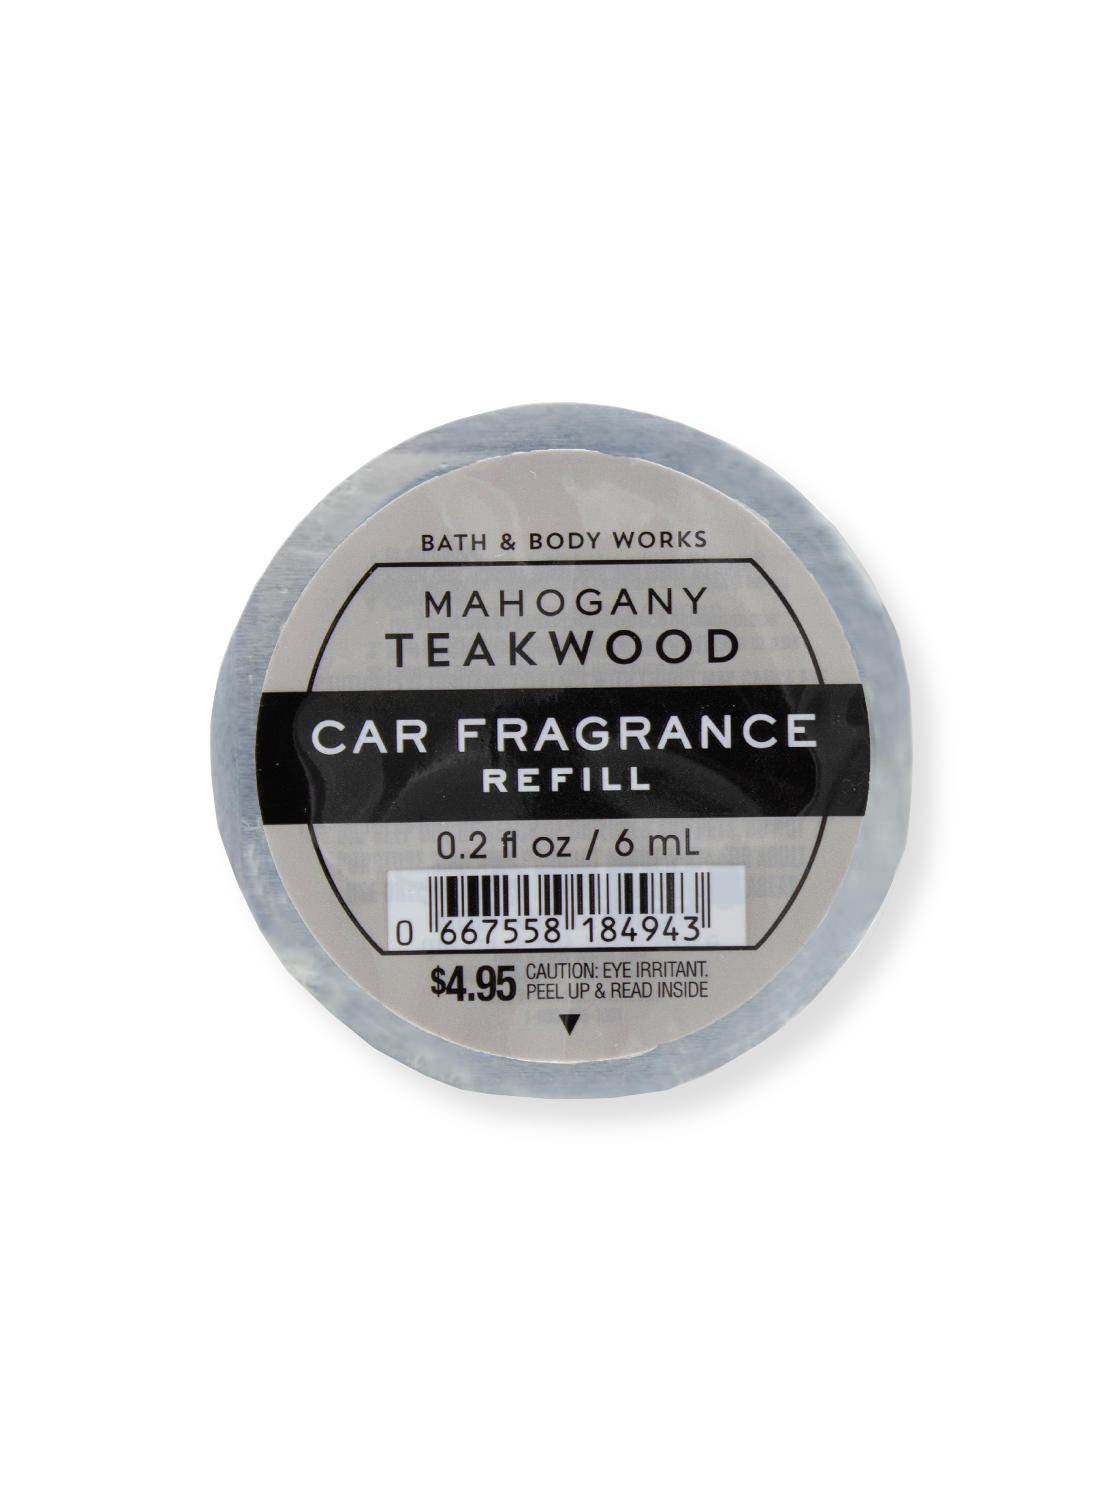  Bath & Body Works Mahogany Teakwood Car Fragrance